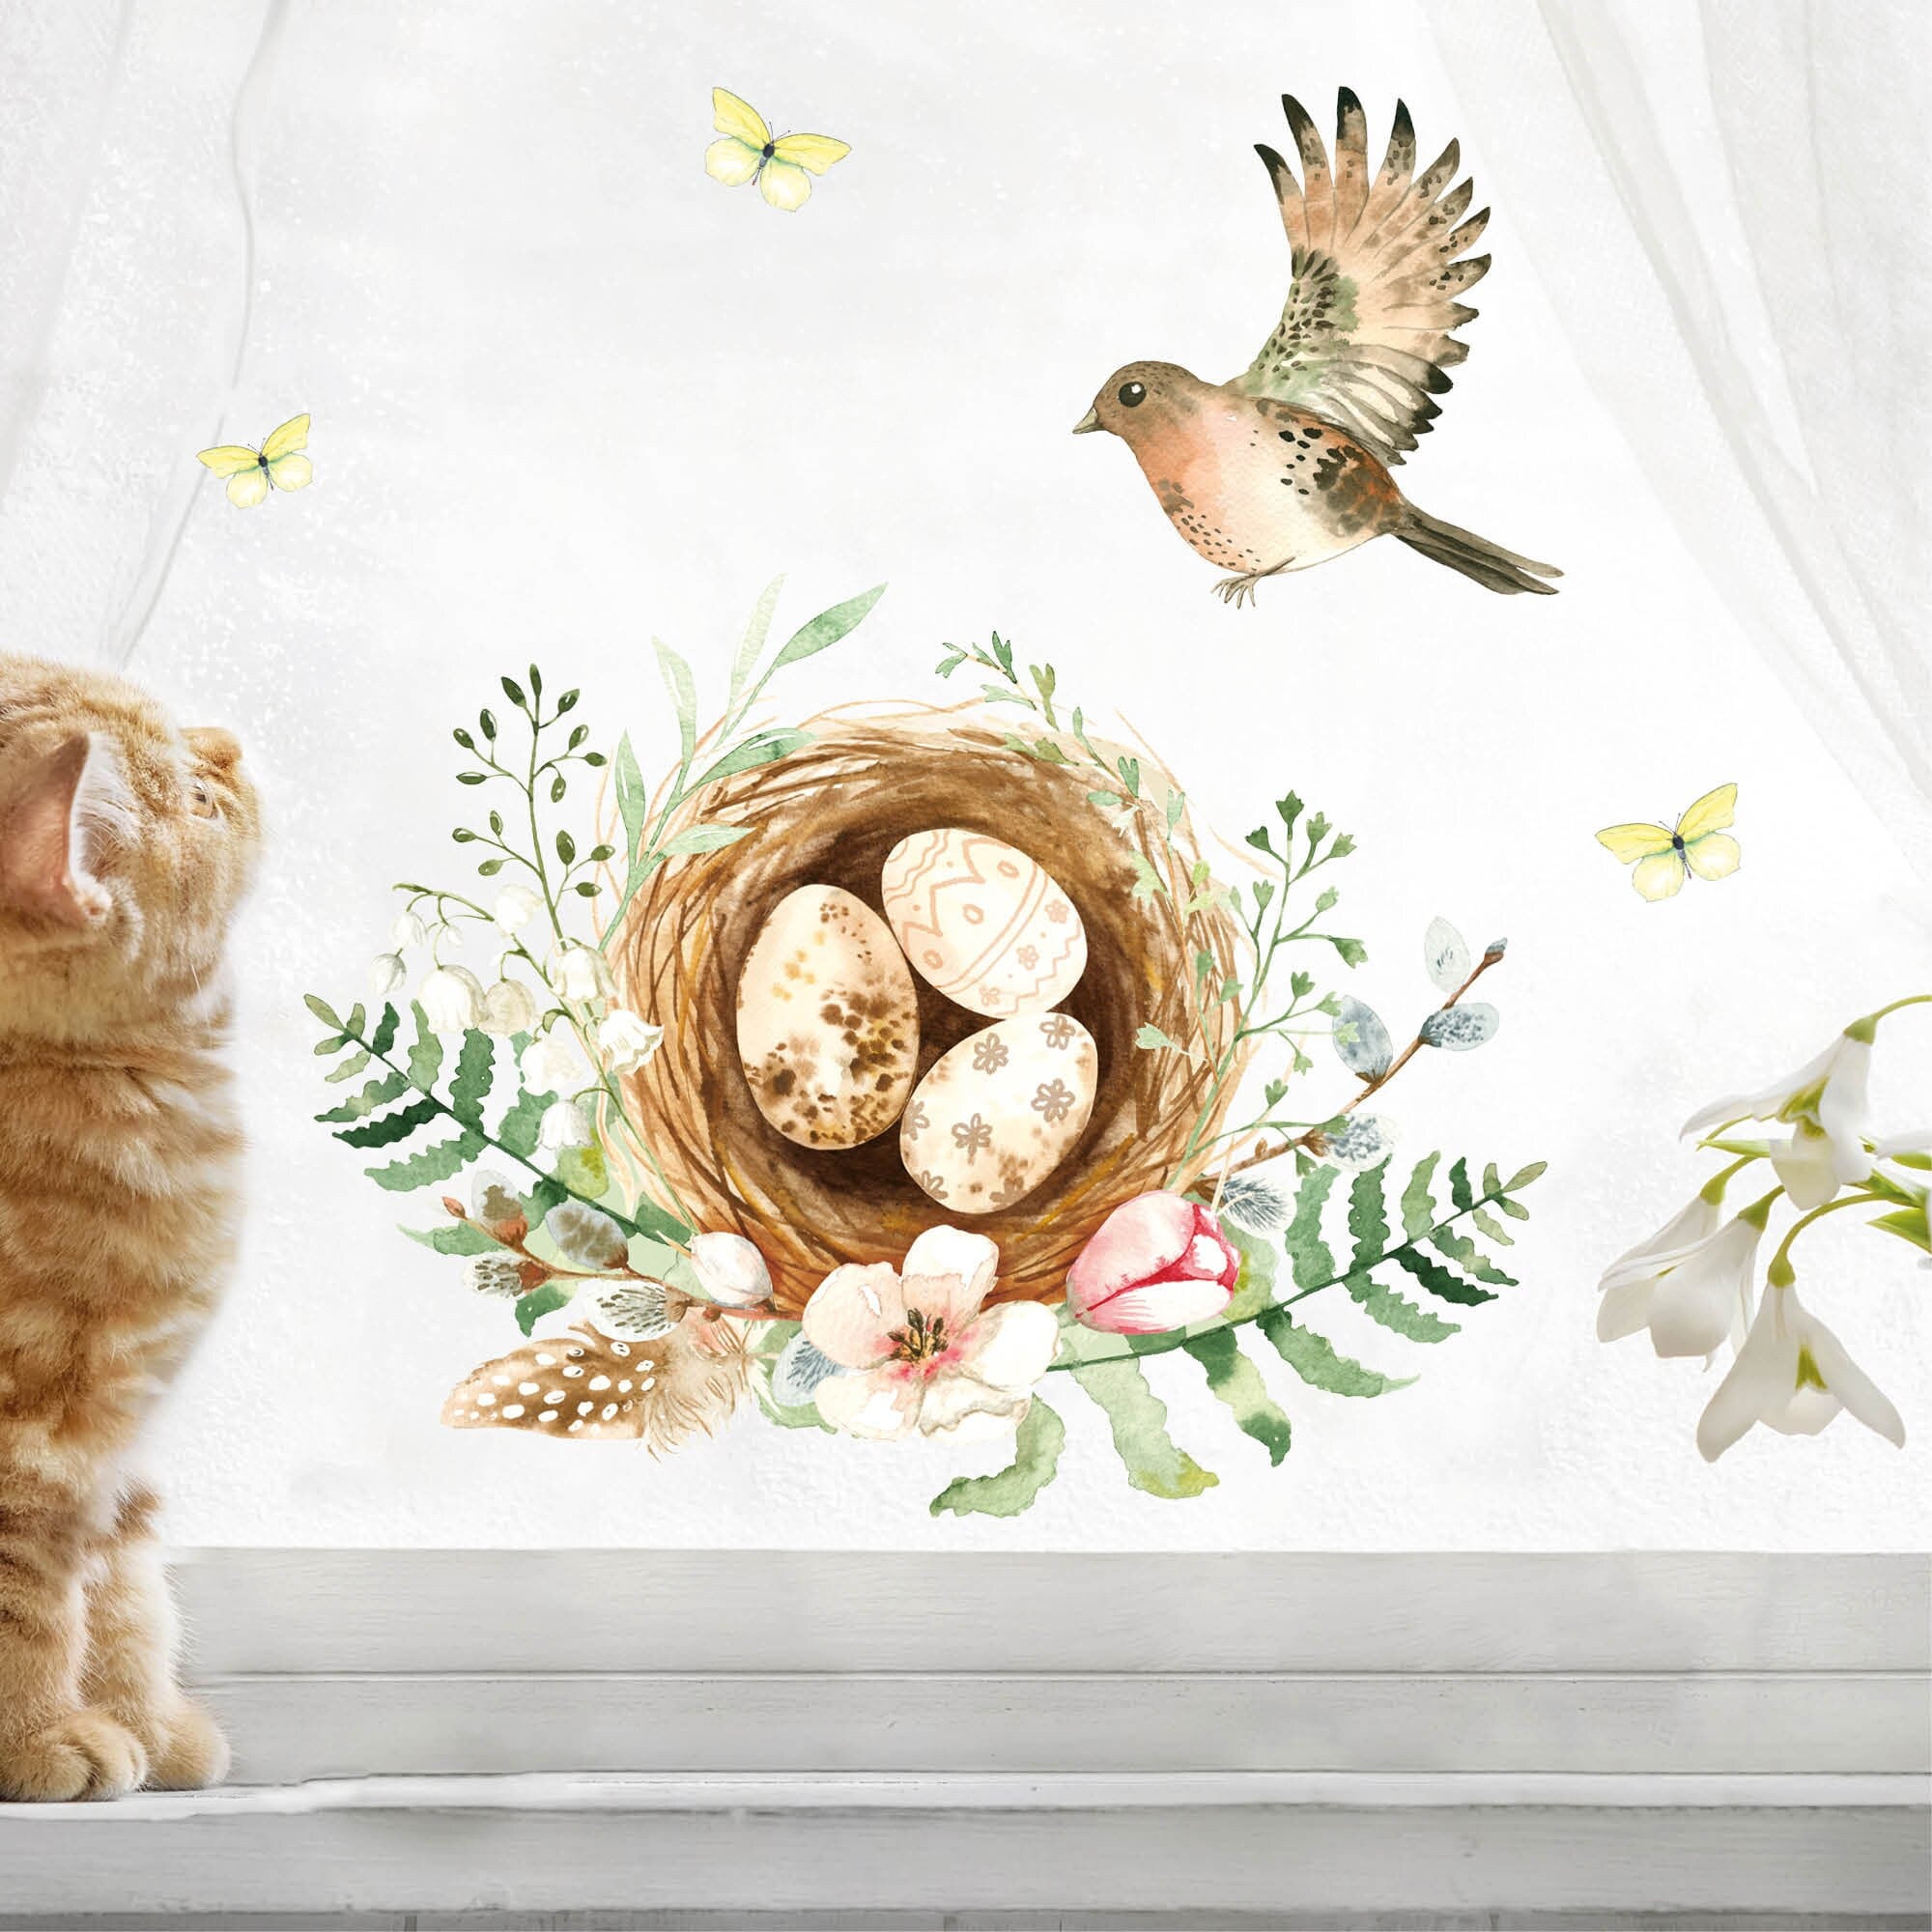 Fensterbild Frühling Ostern Eier im Nest mit Vogel, Fensterdeko Kinderzimmer Kind